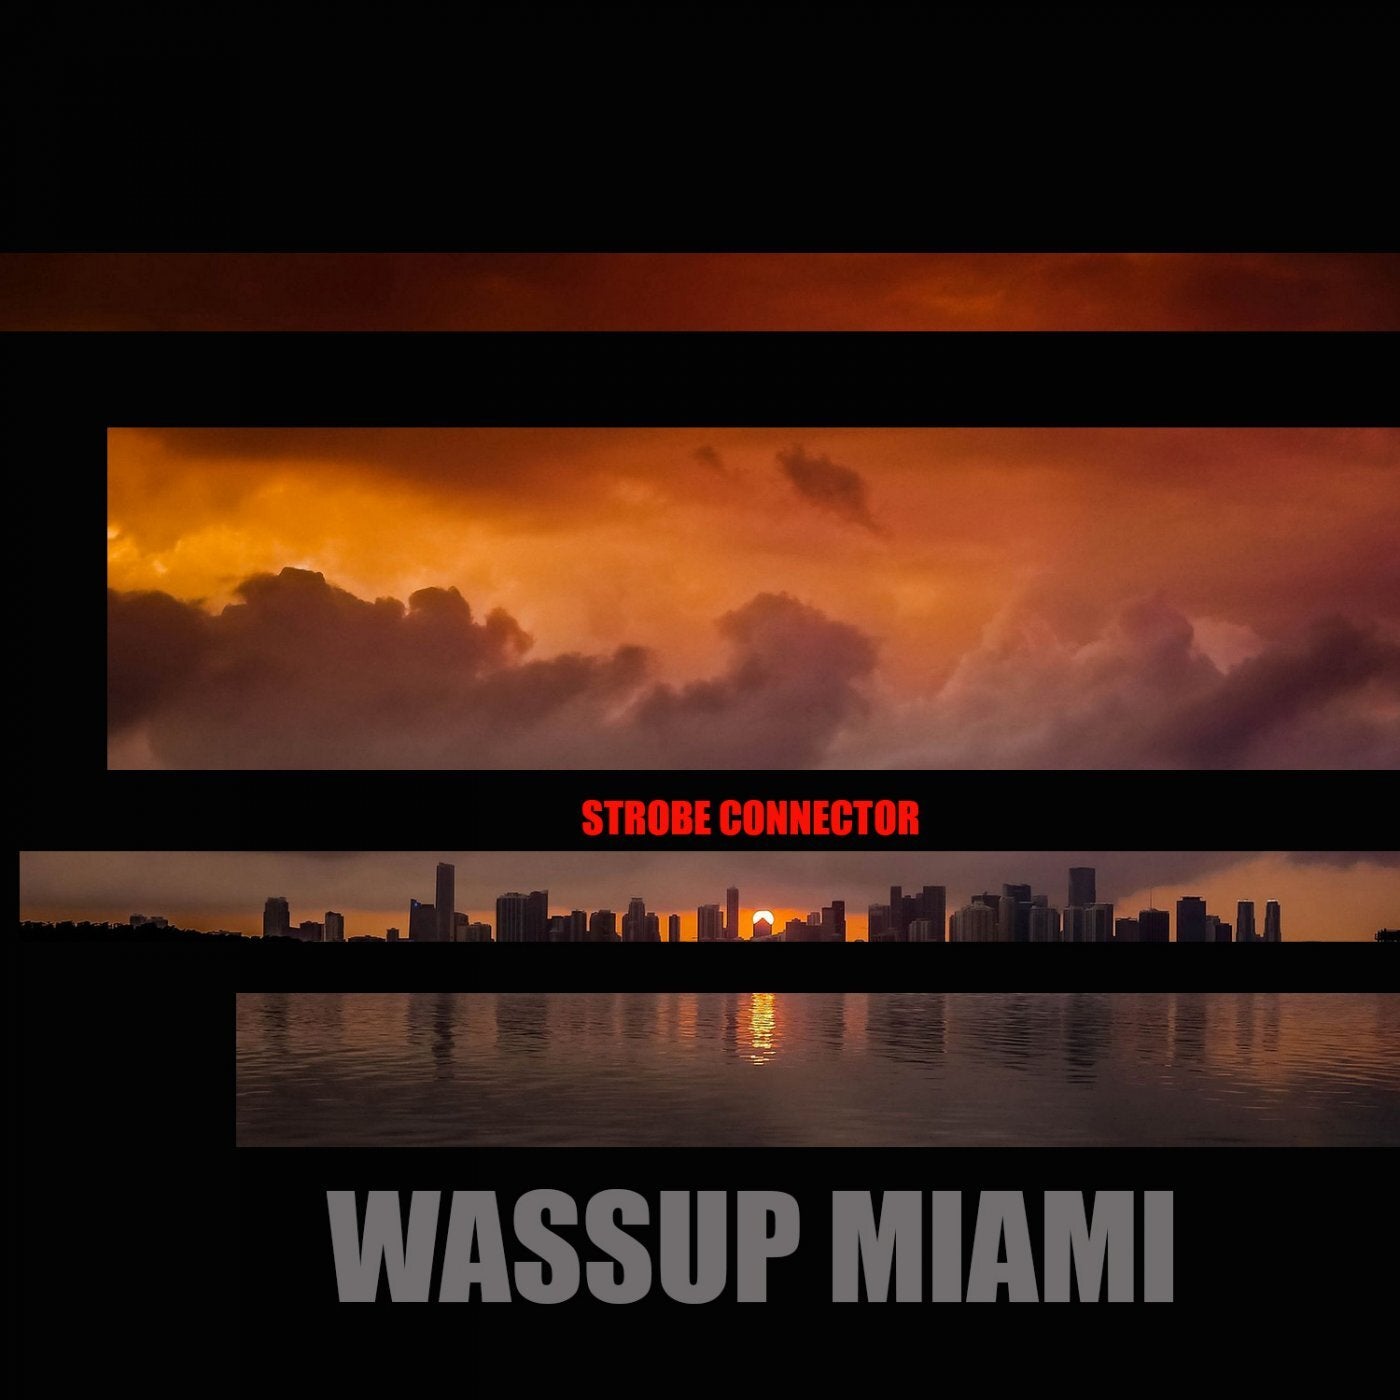 Wassup Miami